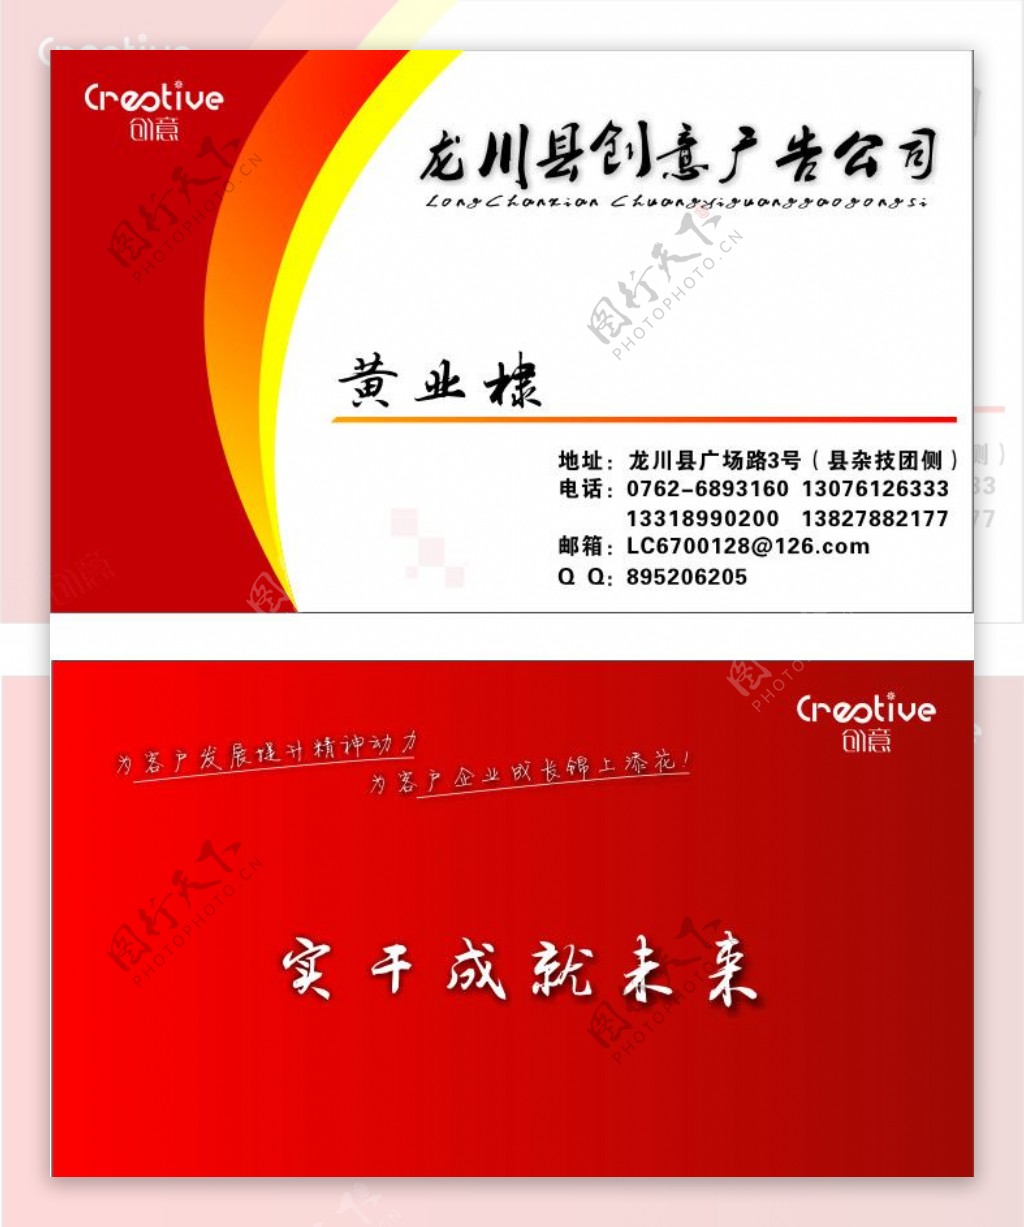 龙川县创意广告名片图片